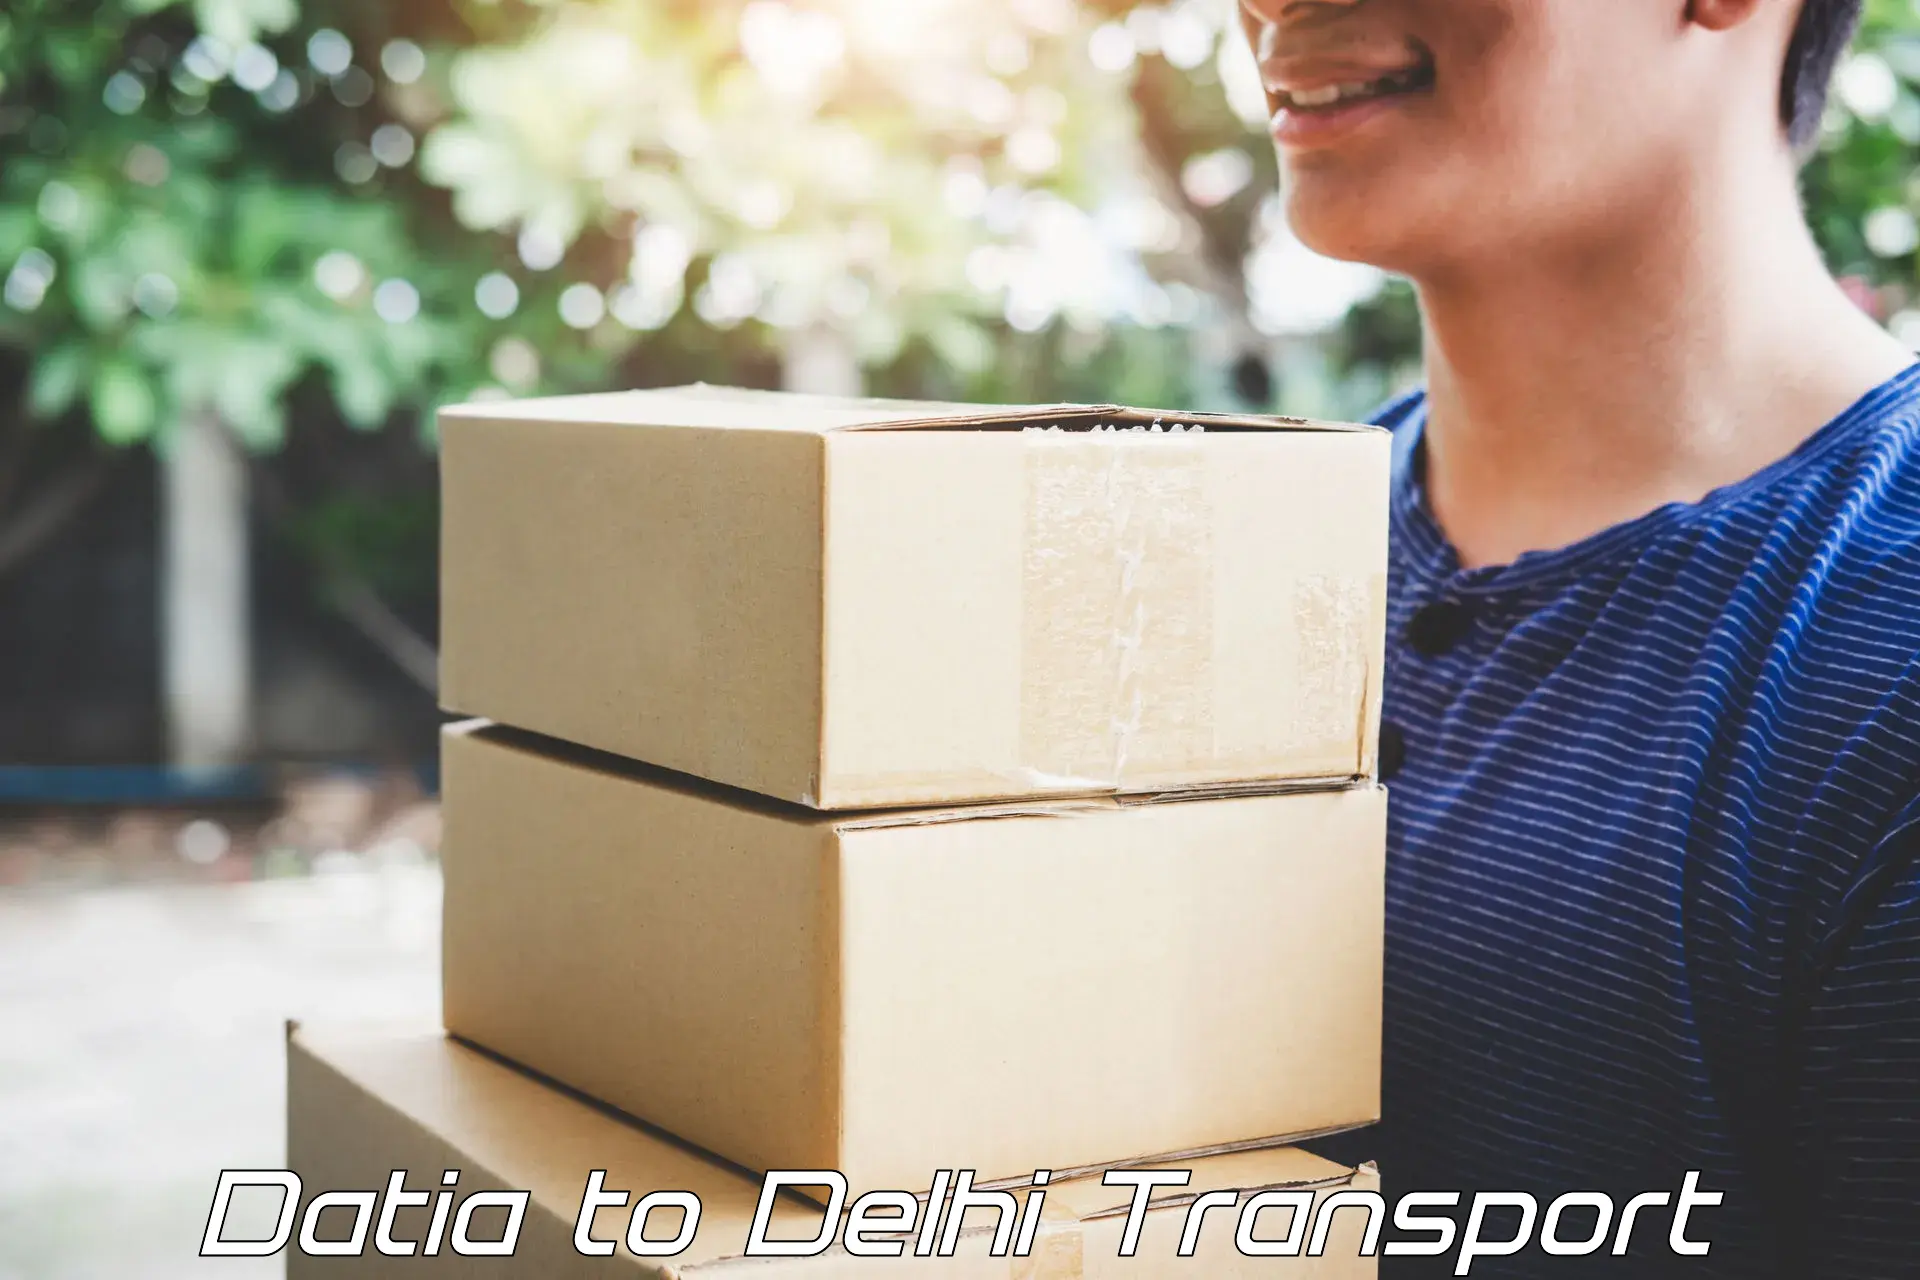 Commercial transport service Datia to East Delhi